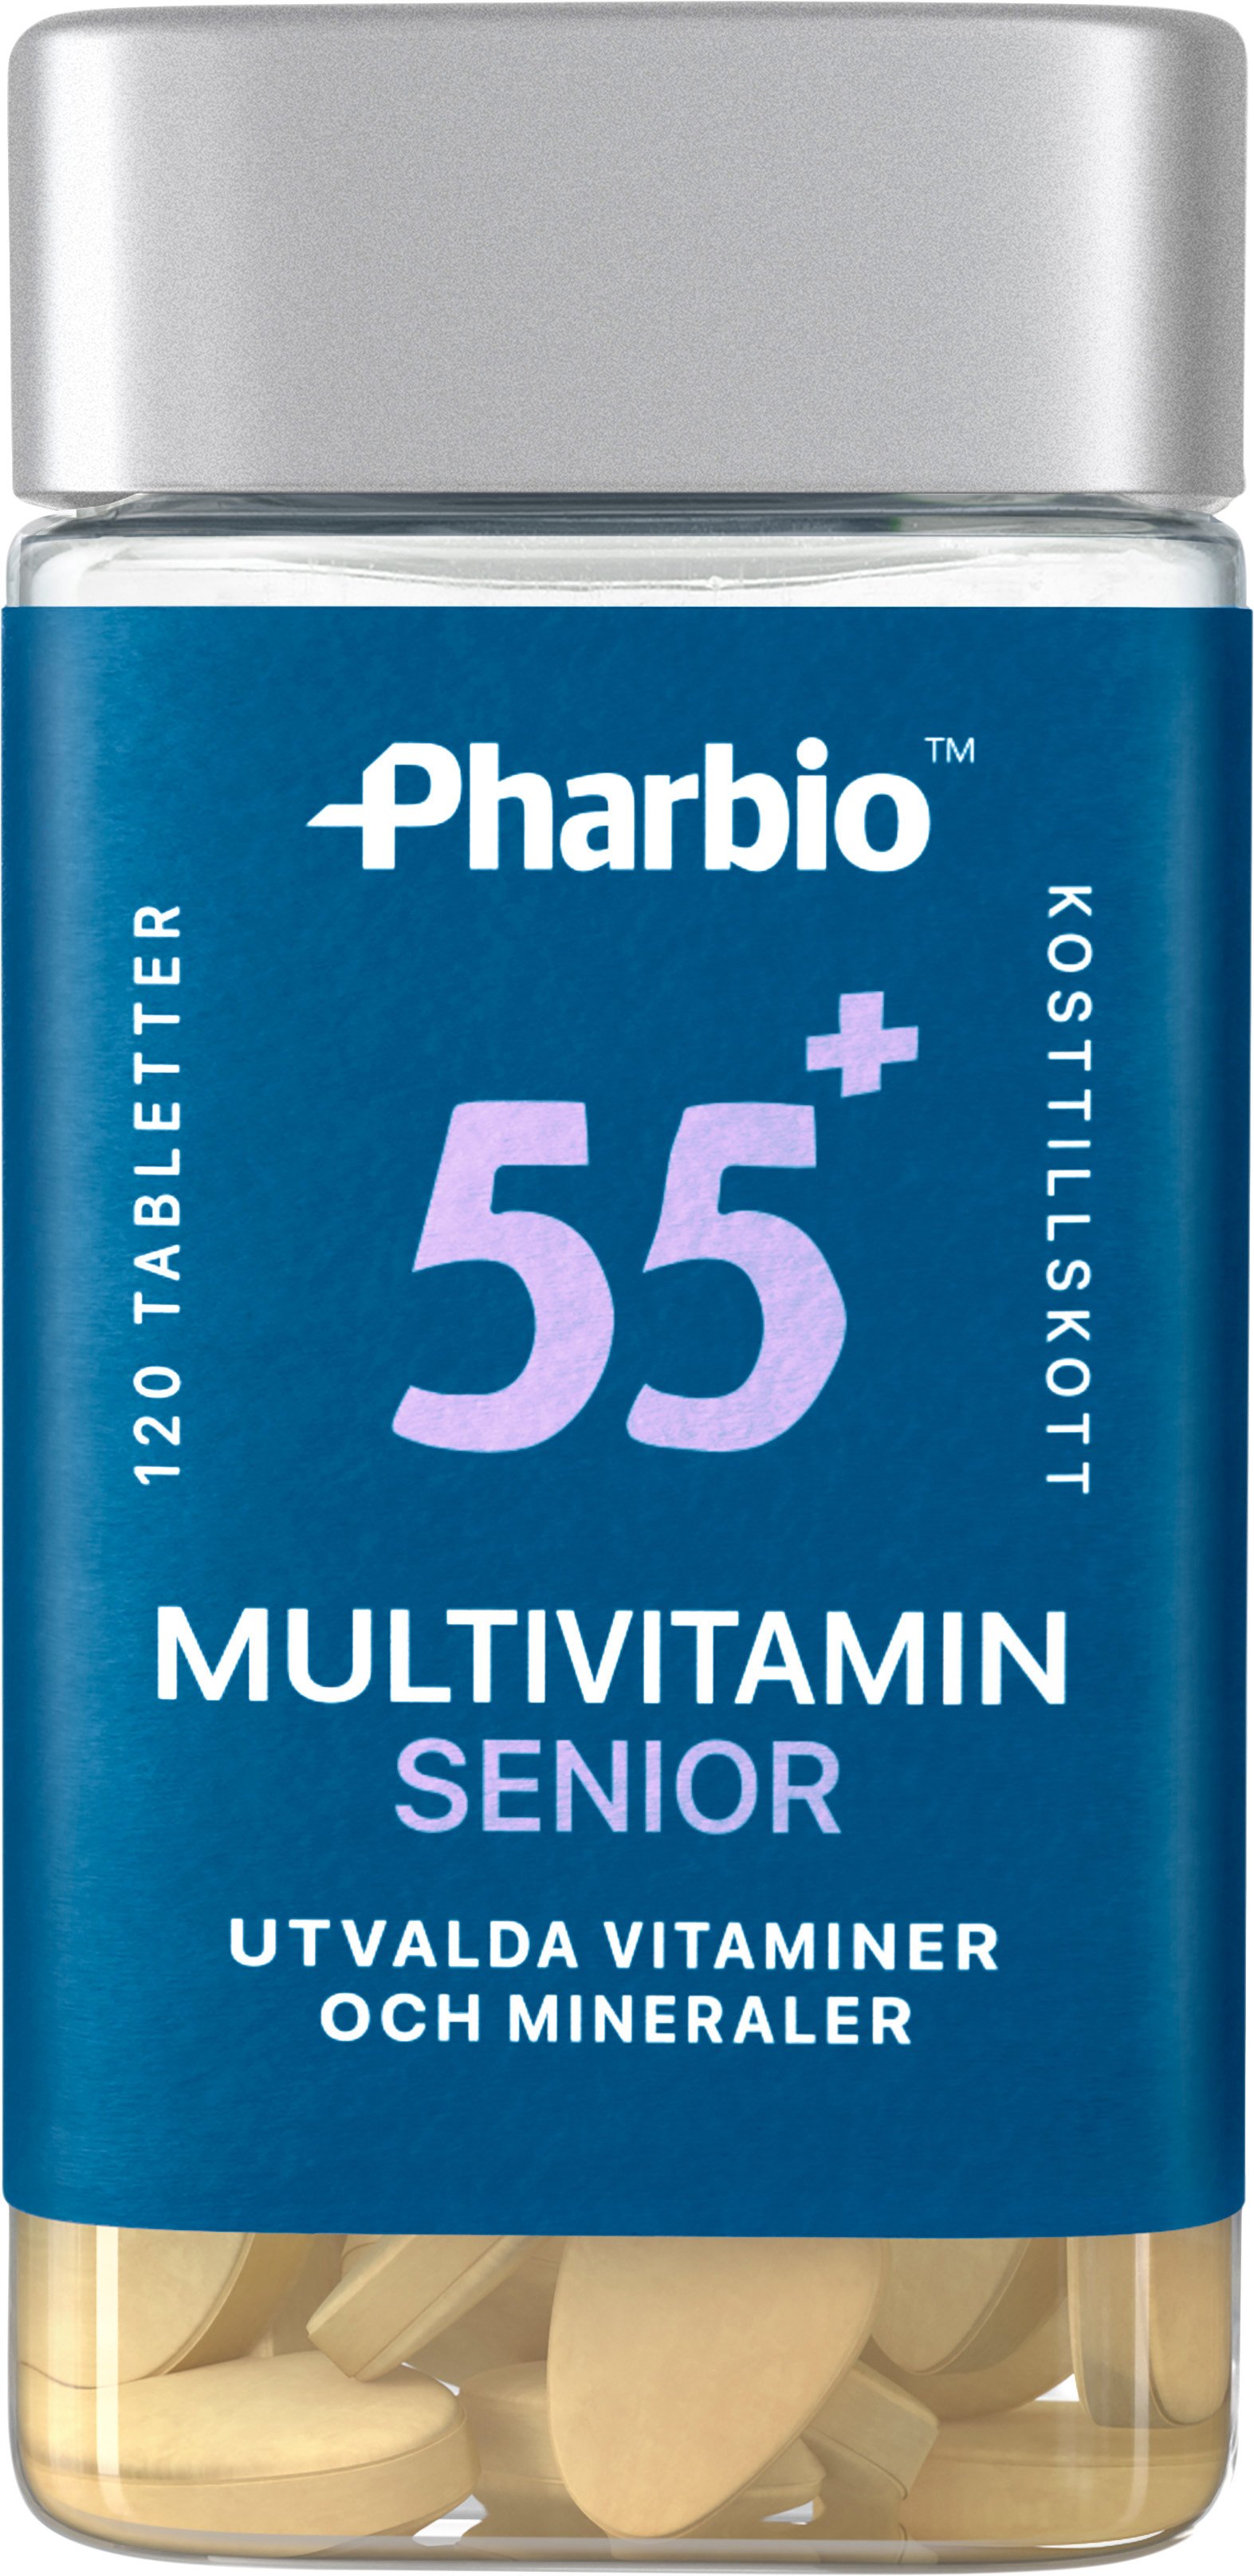 Pharbio Multivitamin Senior 55+ 120 tabletter